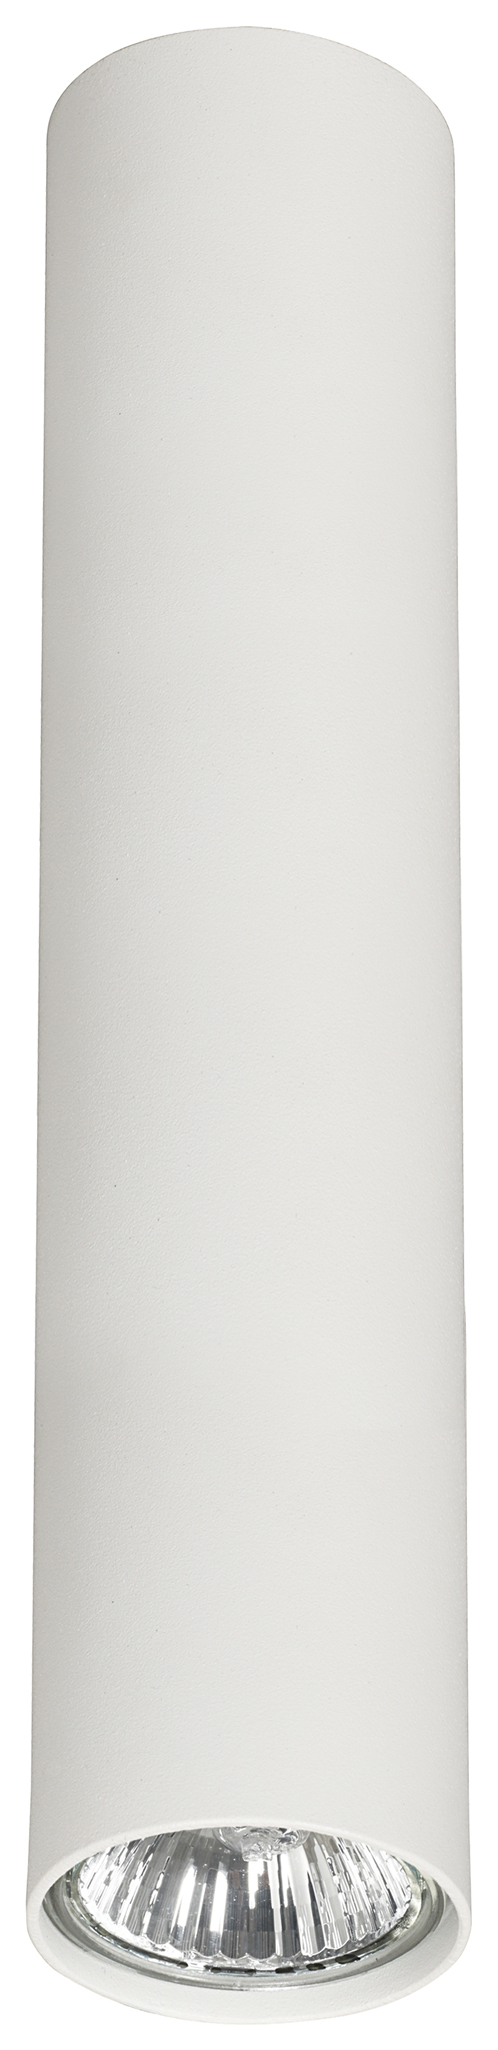 Spot sufitowy plafon Nowodvorski Eye M 1x35W GU10 biały 5463